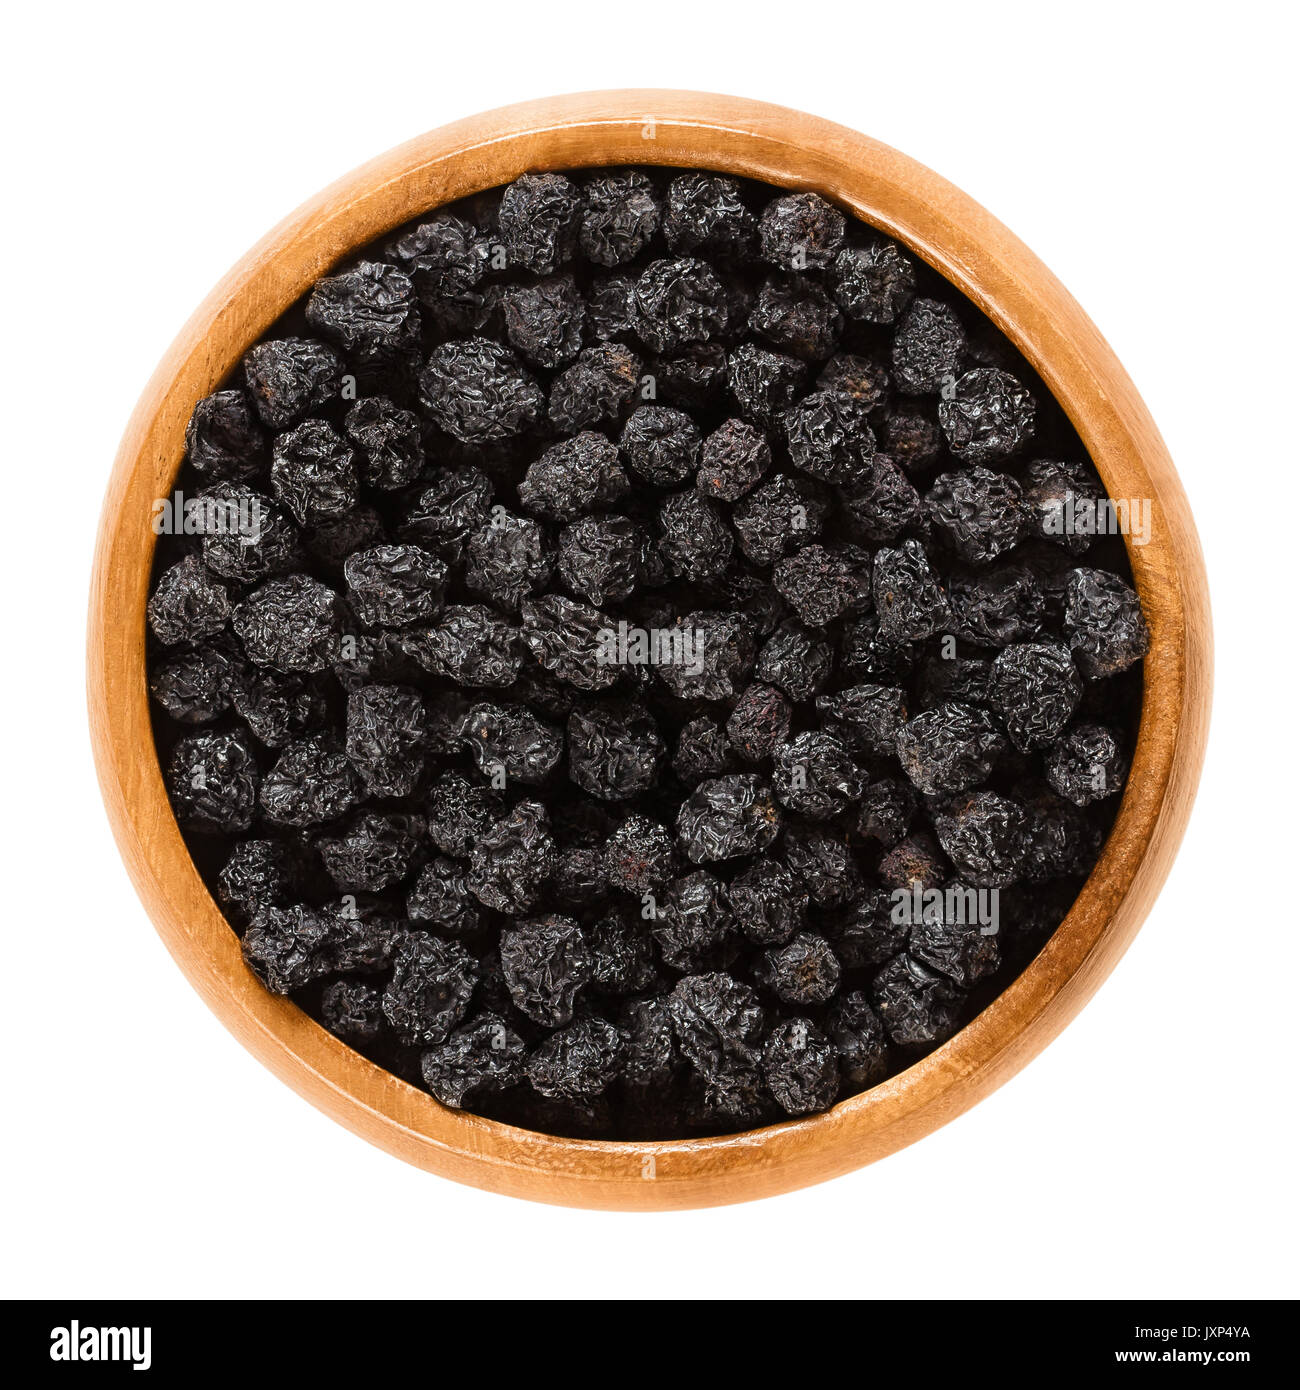 Aronia bayas en el tazón de madera. Chokeberries negros maduros secos, Aronia melanocarpa. Los frutos son utilizados como aromatizantes o colorantes. Macro Fotografía de alimentos. Foto de stock